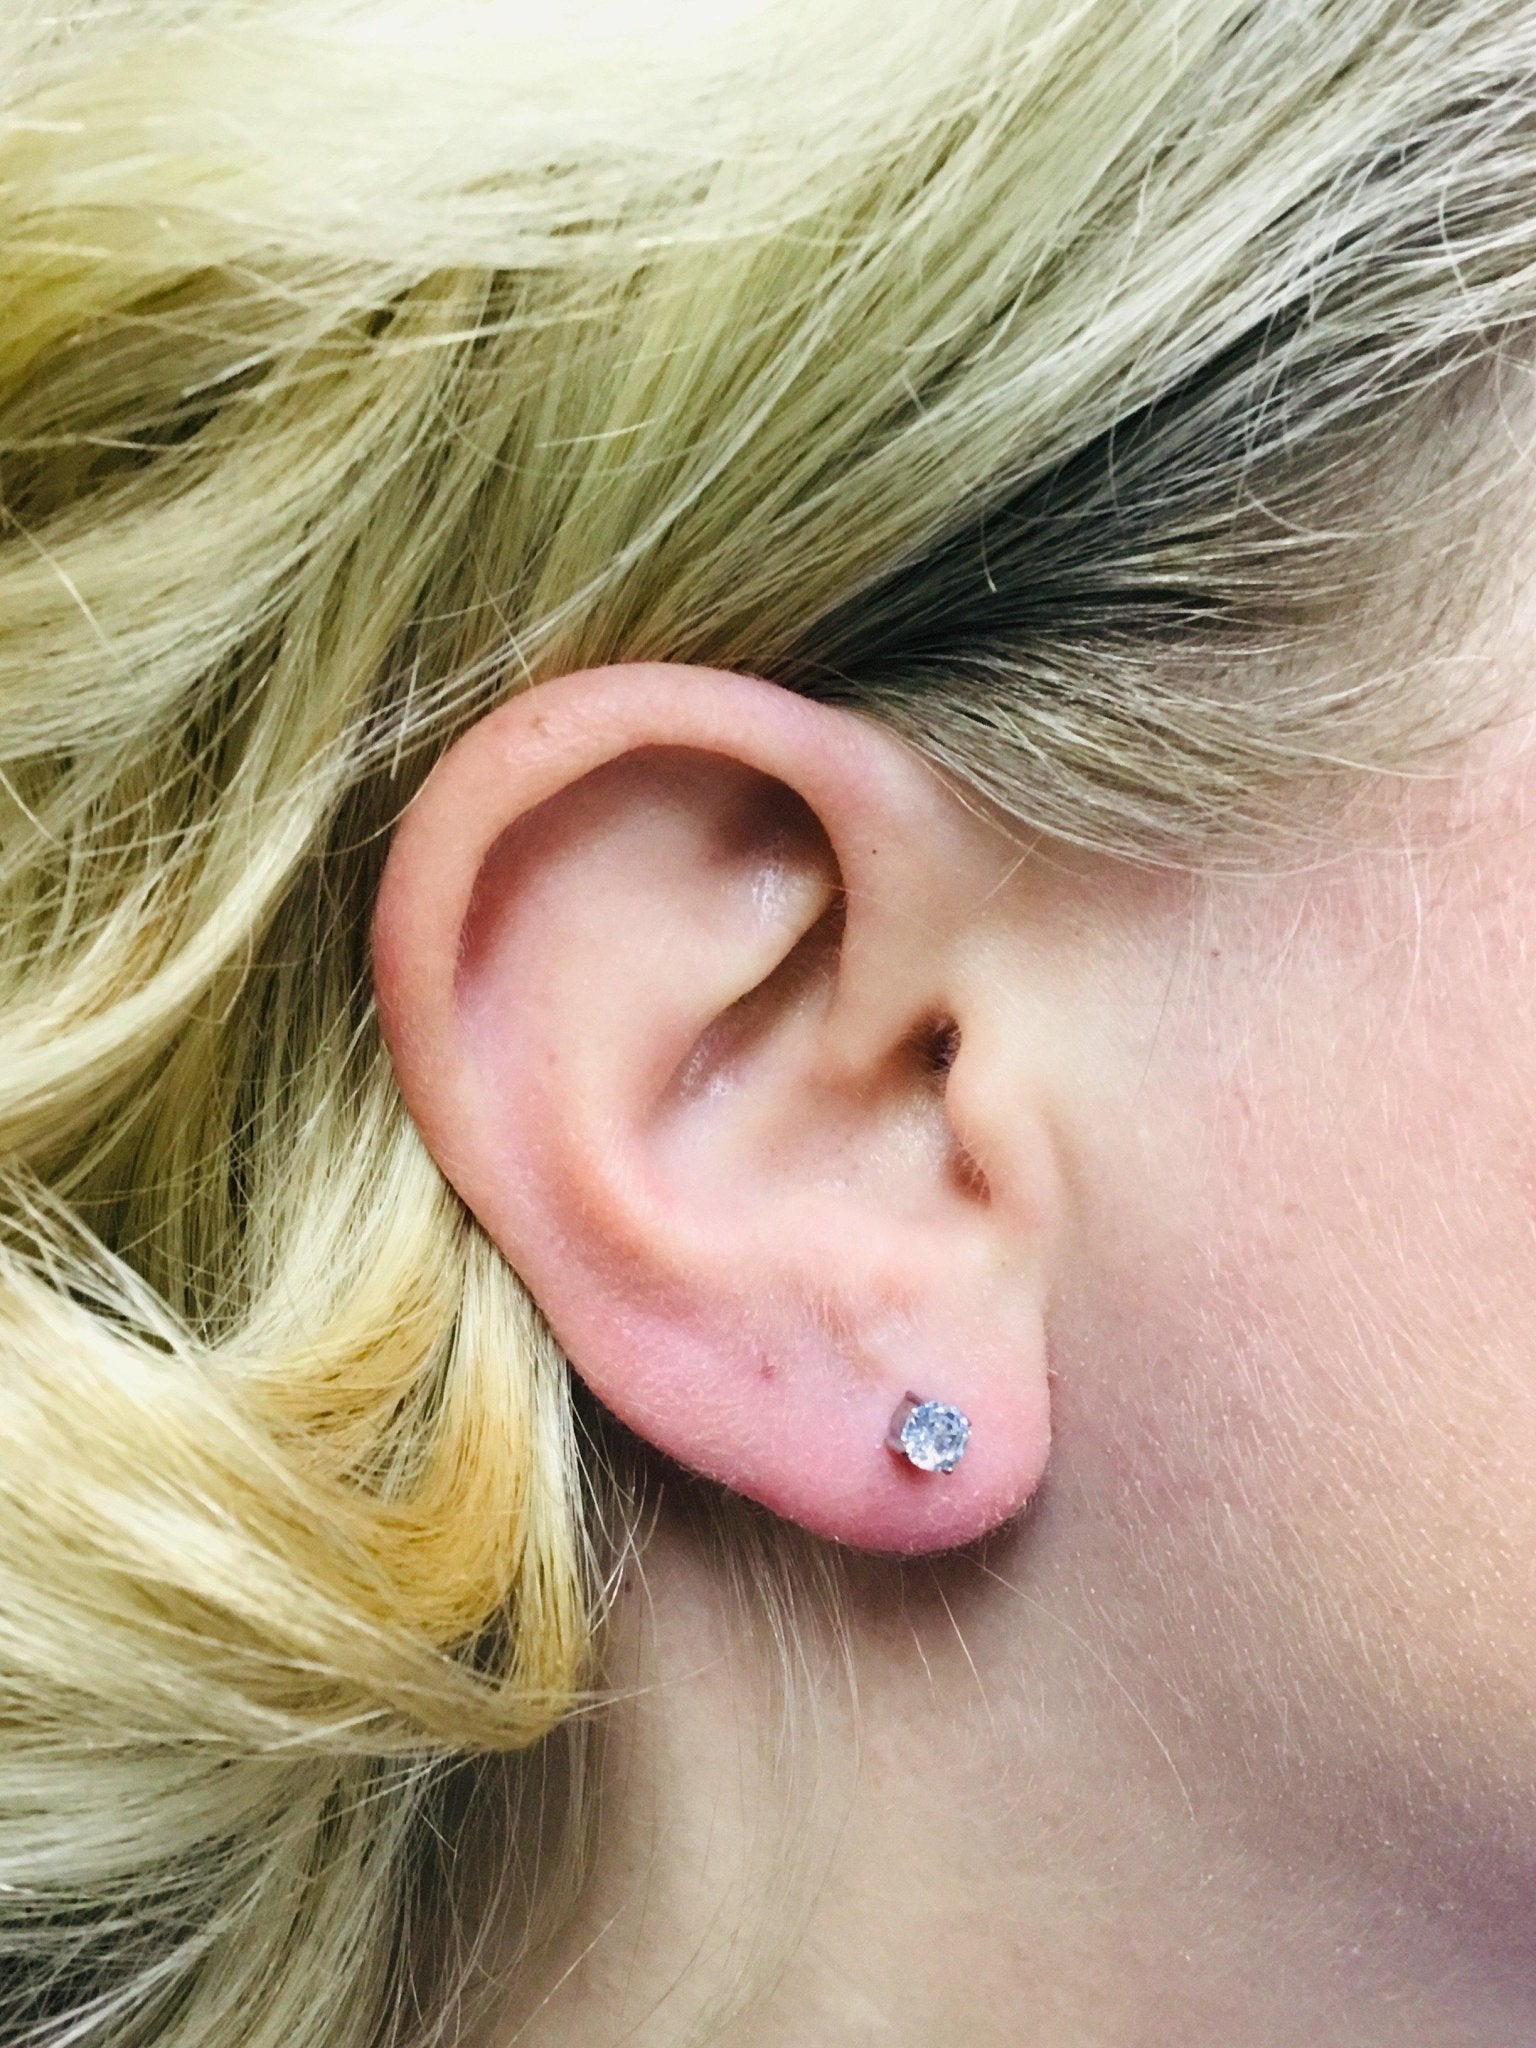 Gardenia Triple Flower Ear Piercing Earring Stud Set | Flower earrings studs,  Stud earrings set, Ear piercings